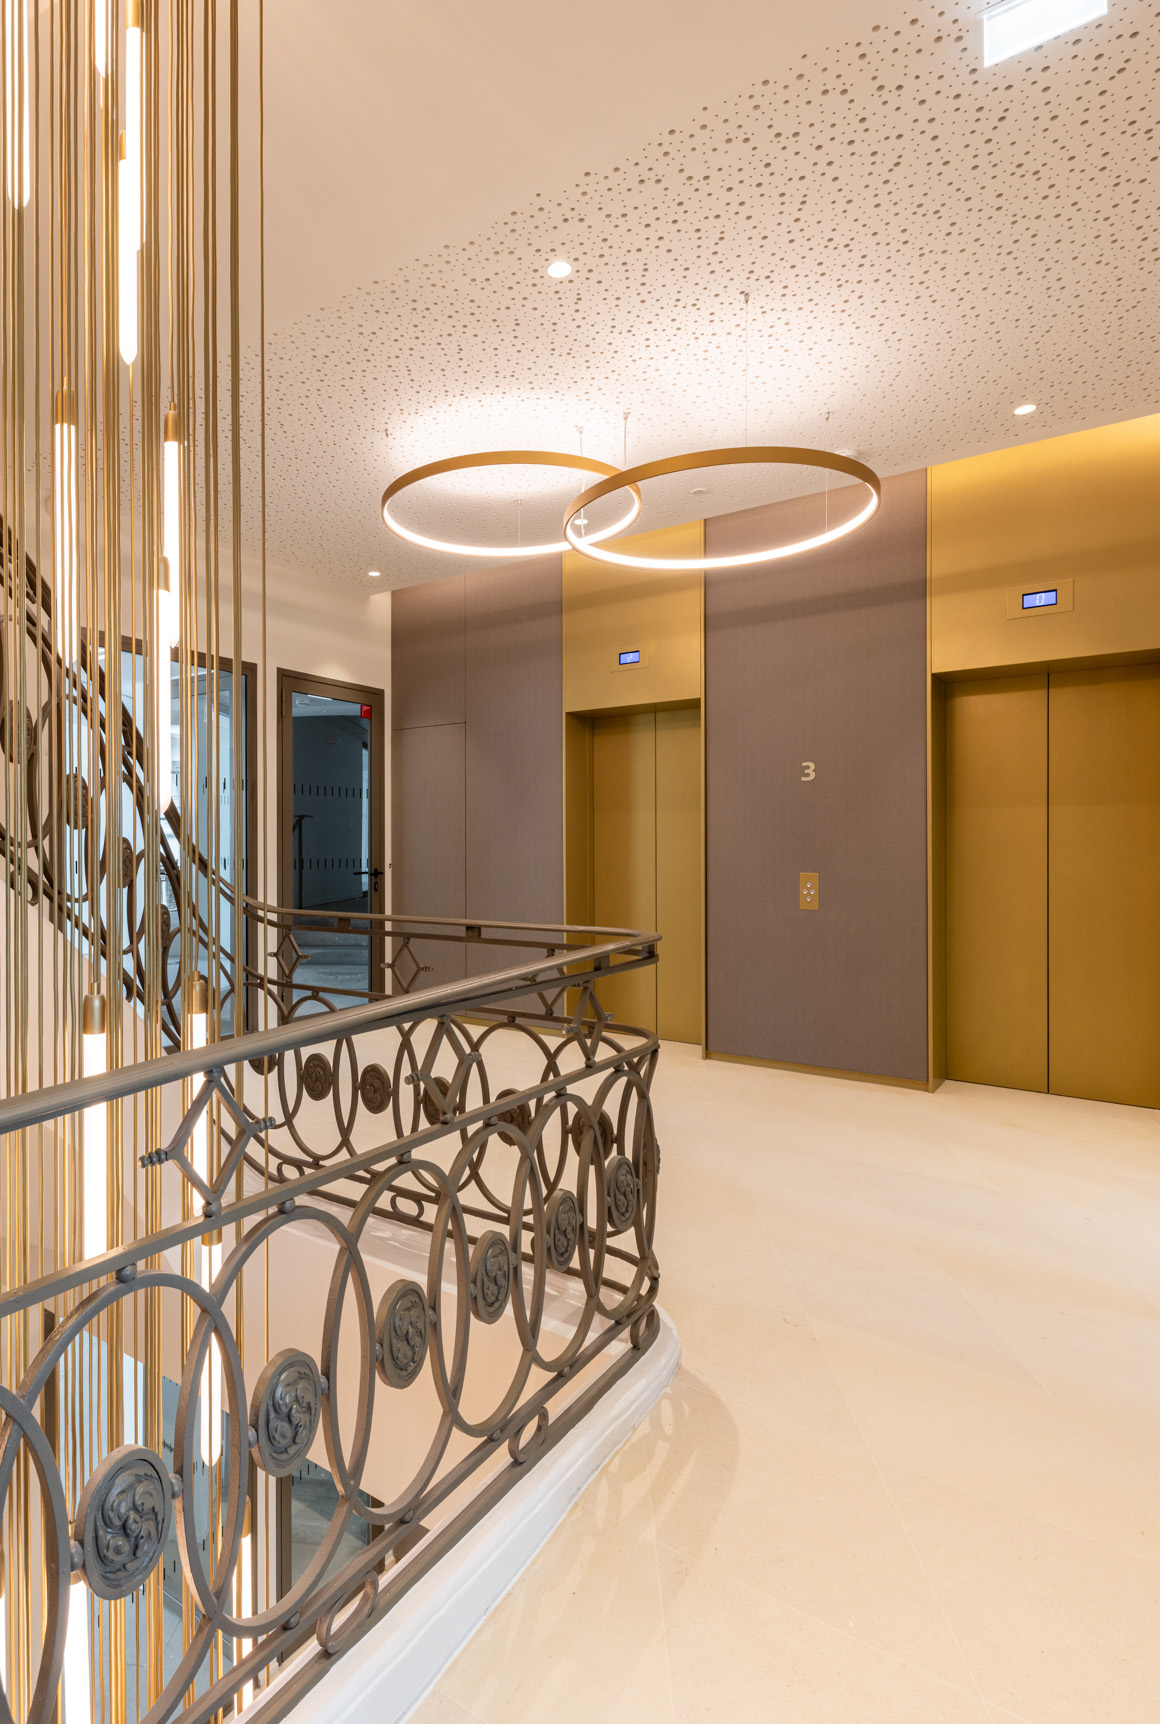 Palier du R+3 d'un immeuble de bureaux rénové avec des luminaires moderners et ascenseurs aux couleurs champagne, la rampe en ferronnerie travaillée d'un escalier.